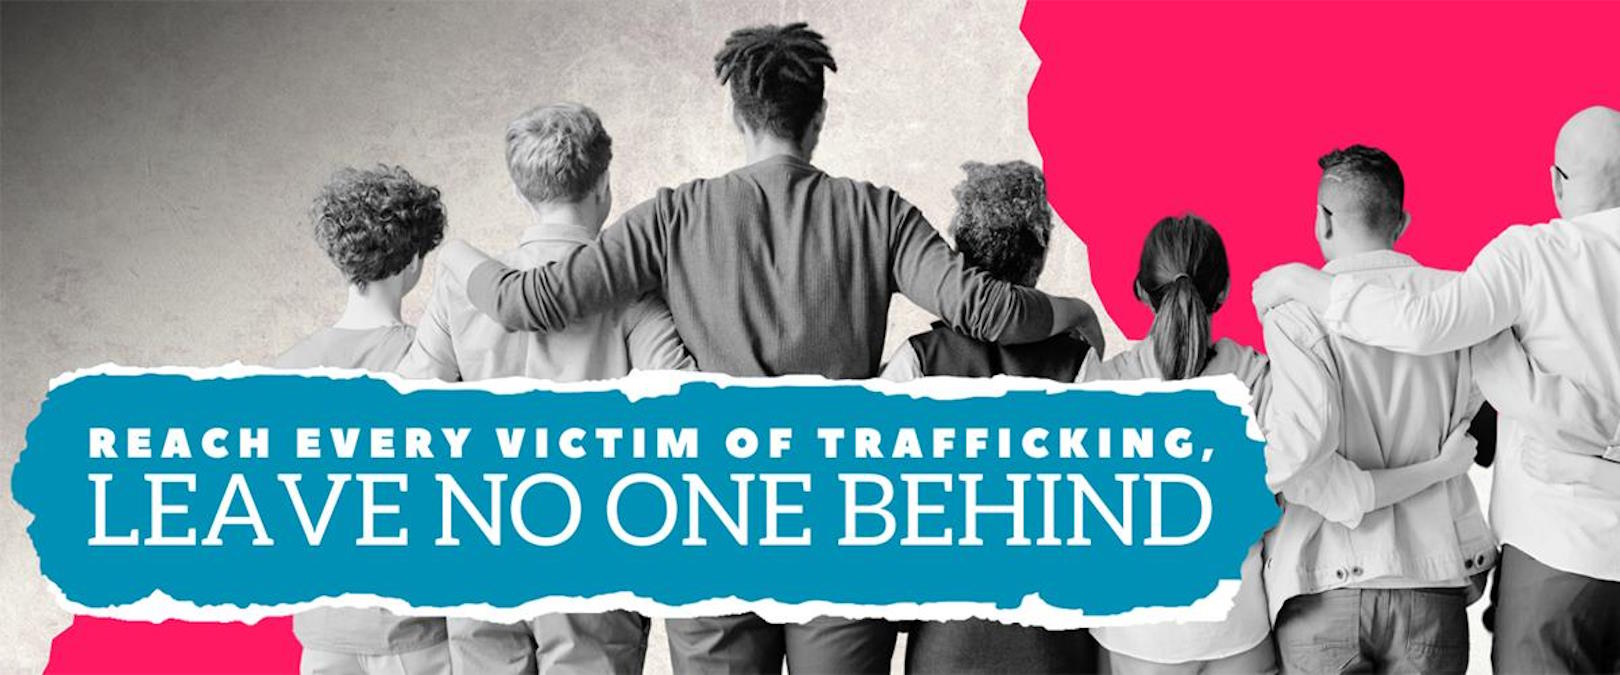 30 luglio: Giornata mondiale contro la tratta degli esseri umani